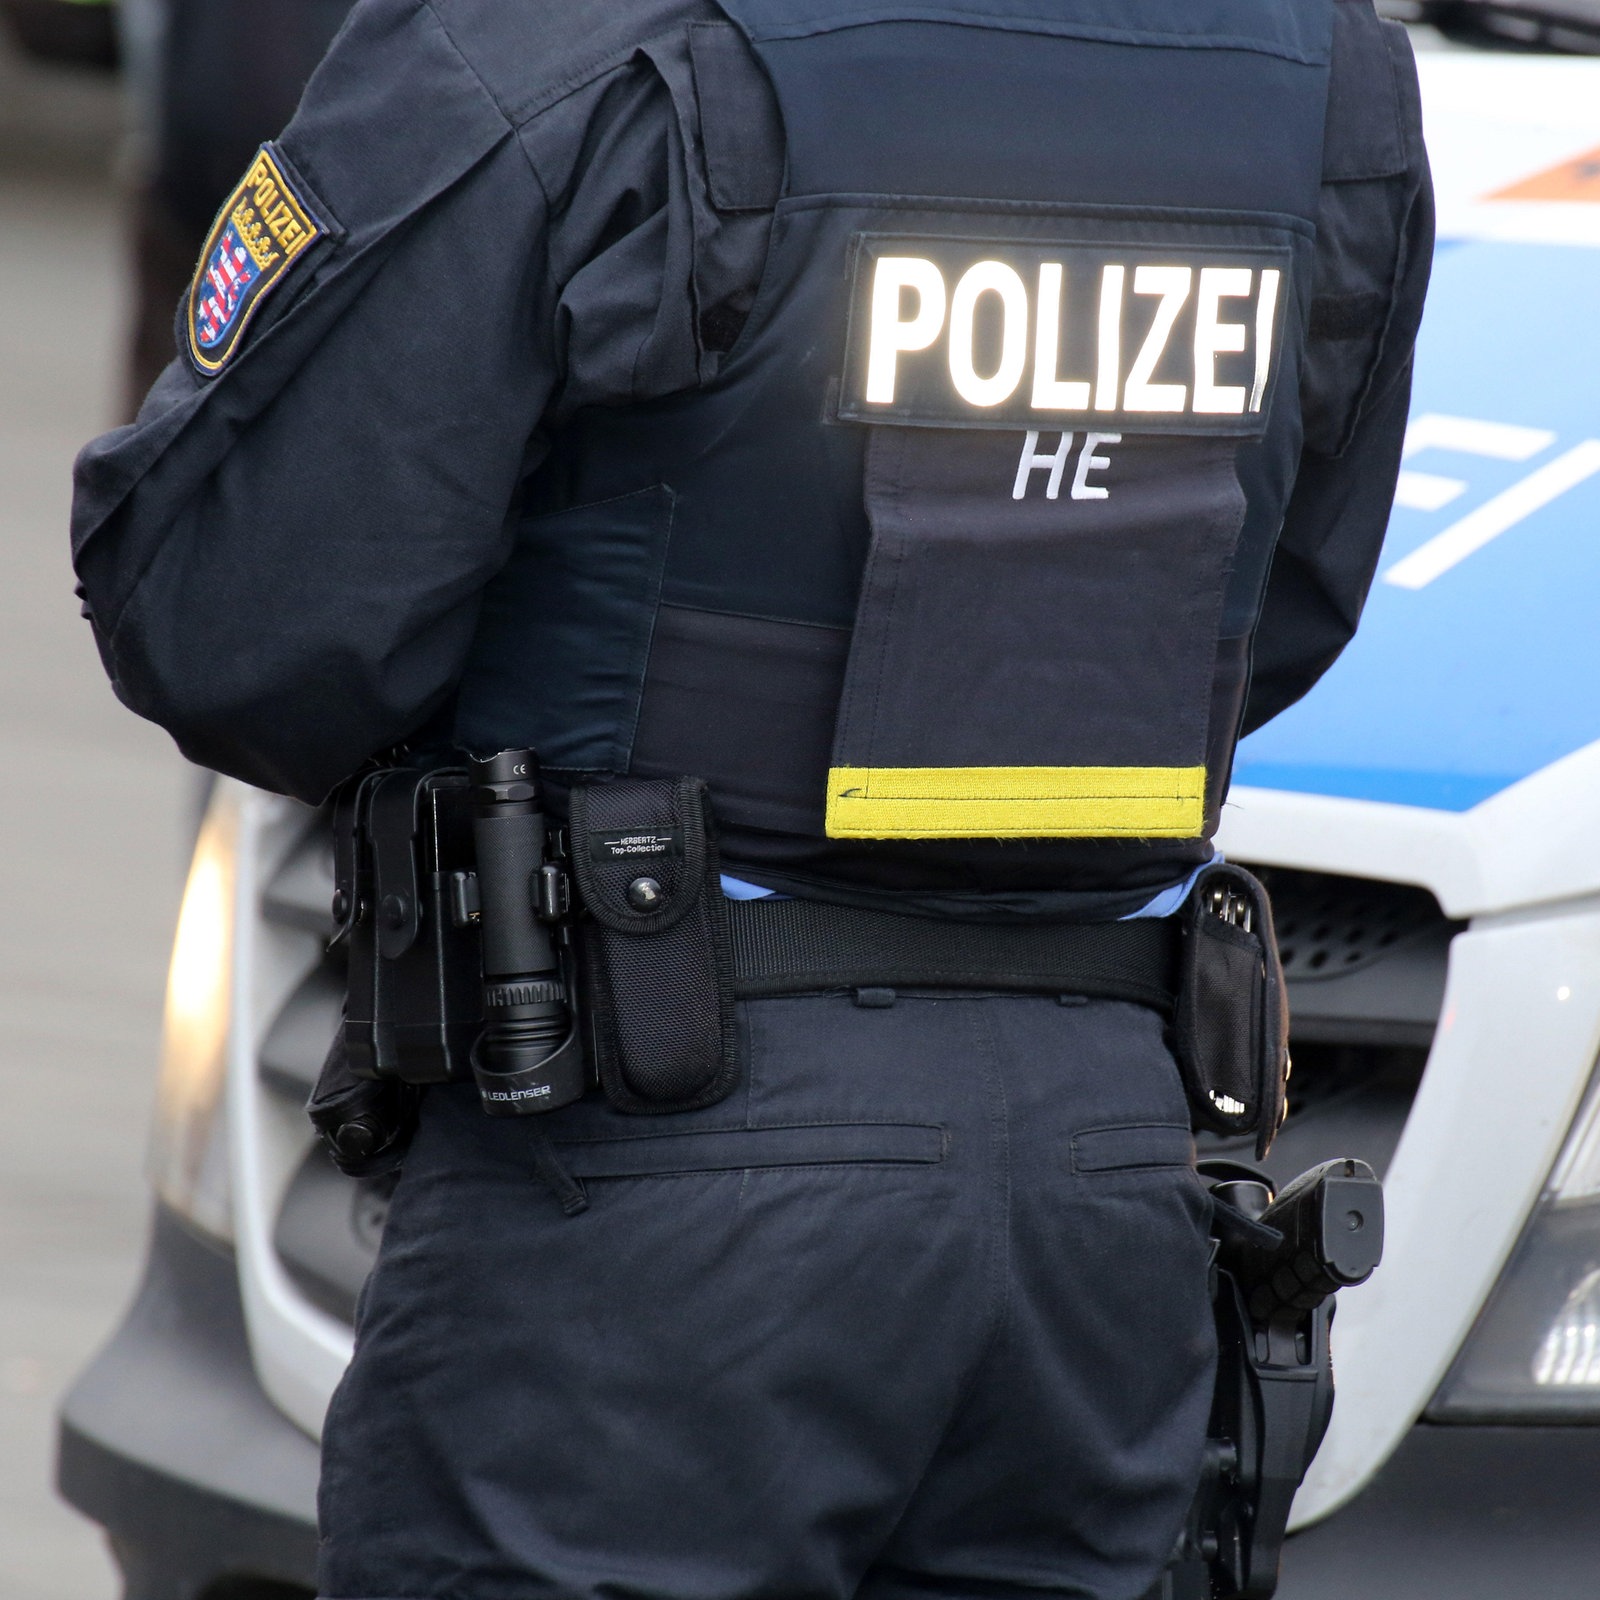 https://www.hessenschau.de/wirtschaft/razzia-polizei-100~_t-1697030483949_v-1to1__xlarge.jpg